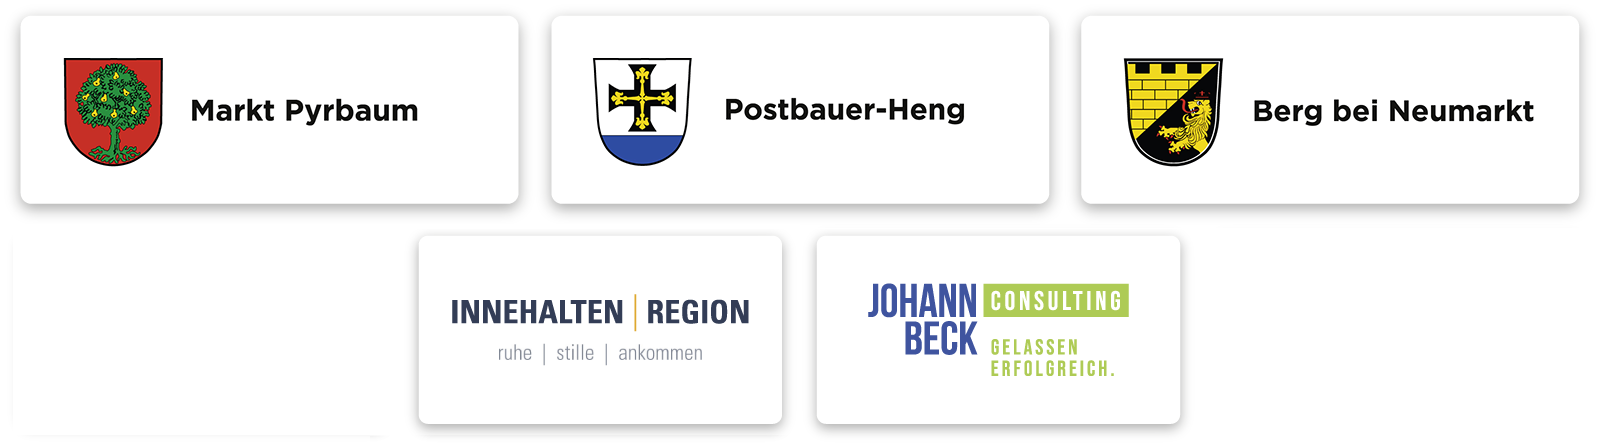 CONTEMPLATIO Partner Wegstrecke Pyrbaum - Postbauer-Heng - Berg bei Neumarkt